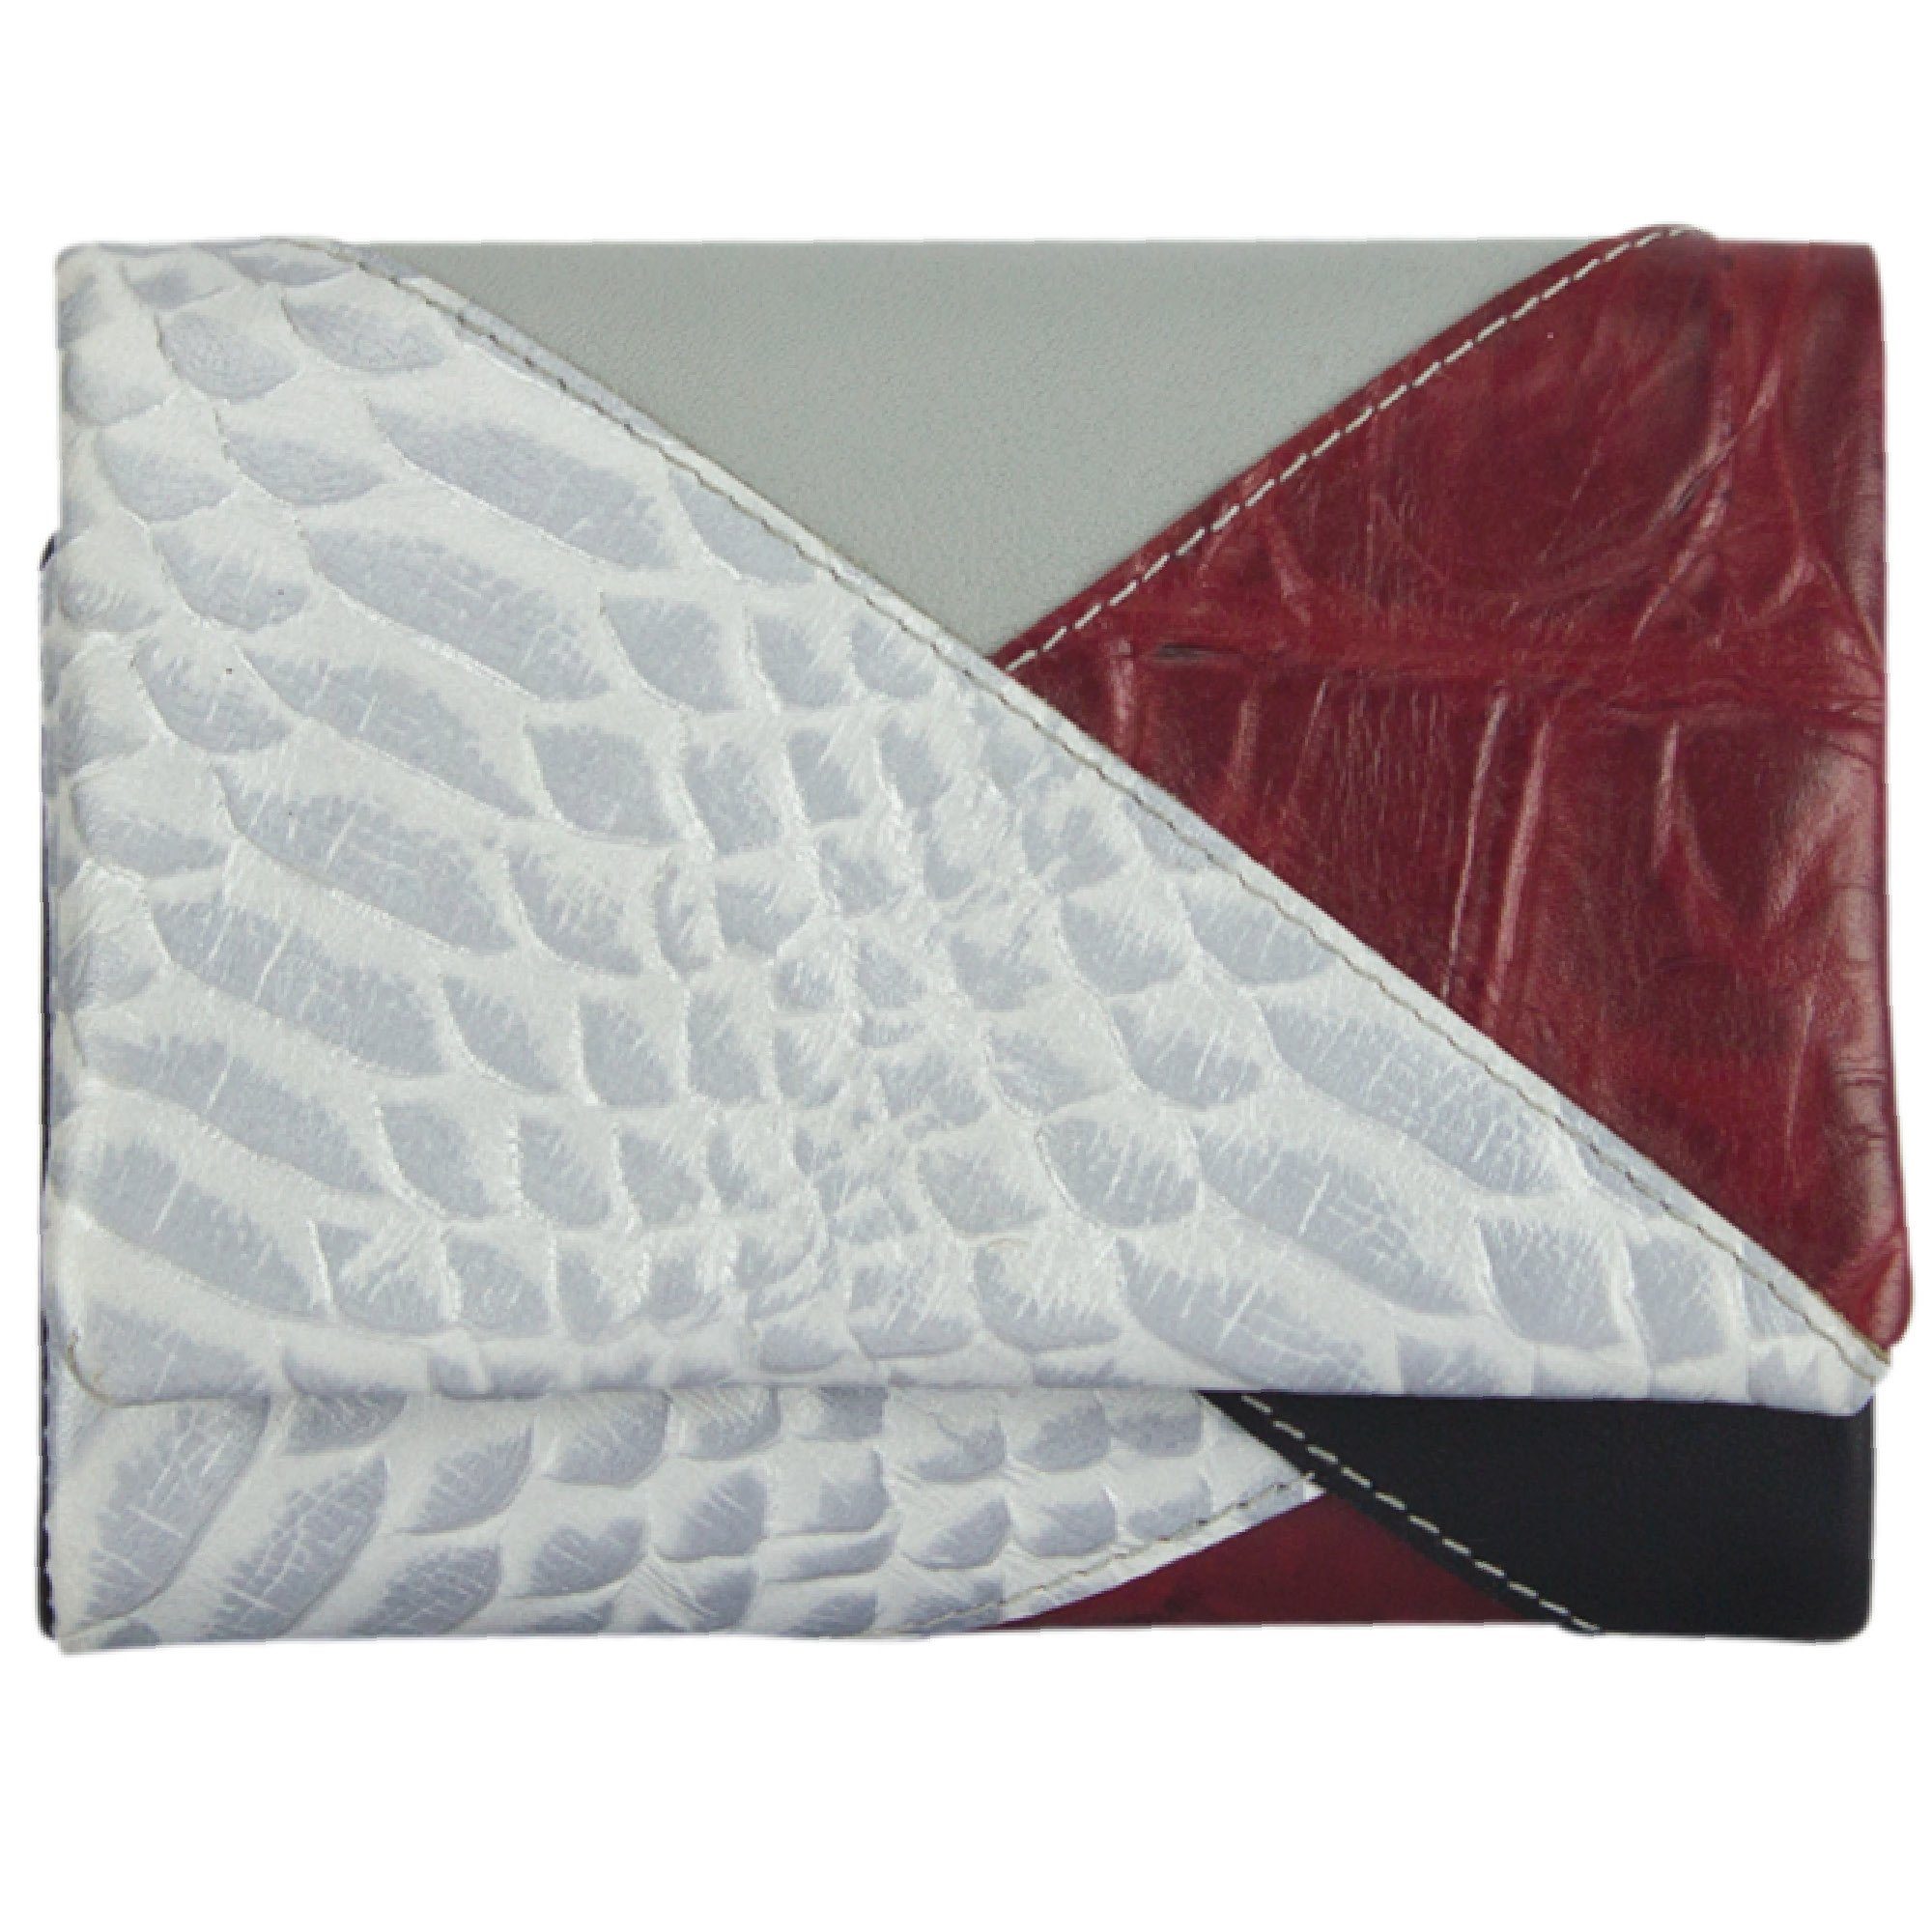 Sunsa Geldbörse Leder Geldbeutel Portemonnaie Brieftasche, echt Leder, mit RFID-Schutz, in eleganten Design, zeitlos weiß/rot